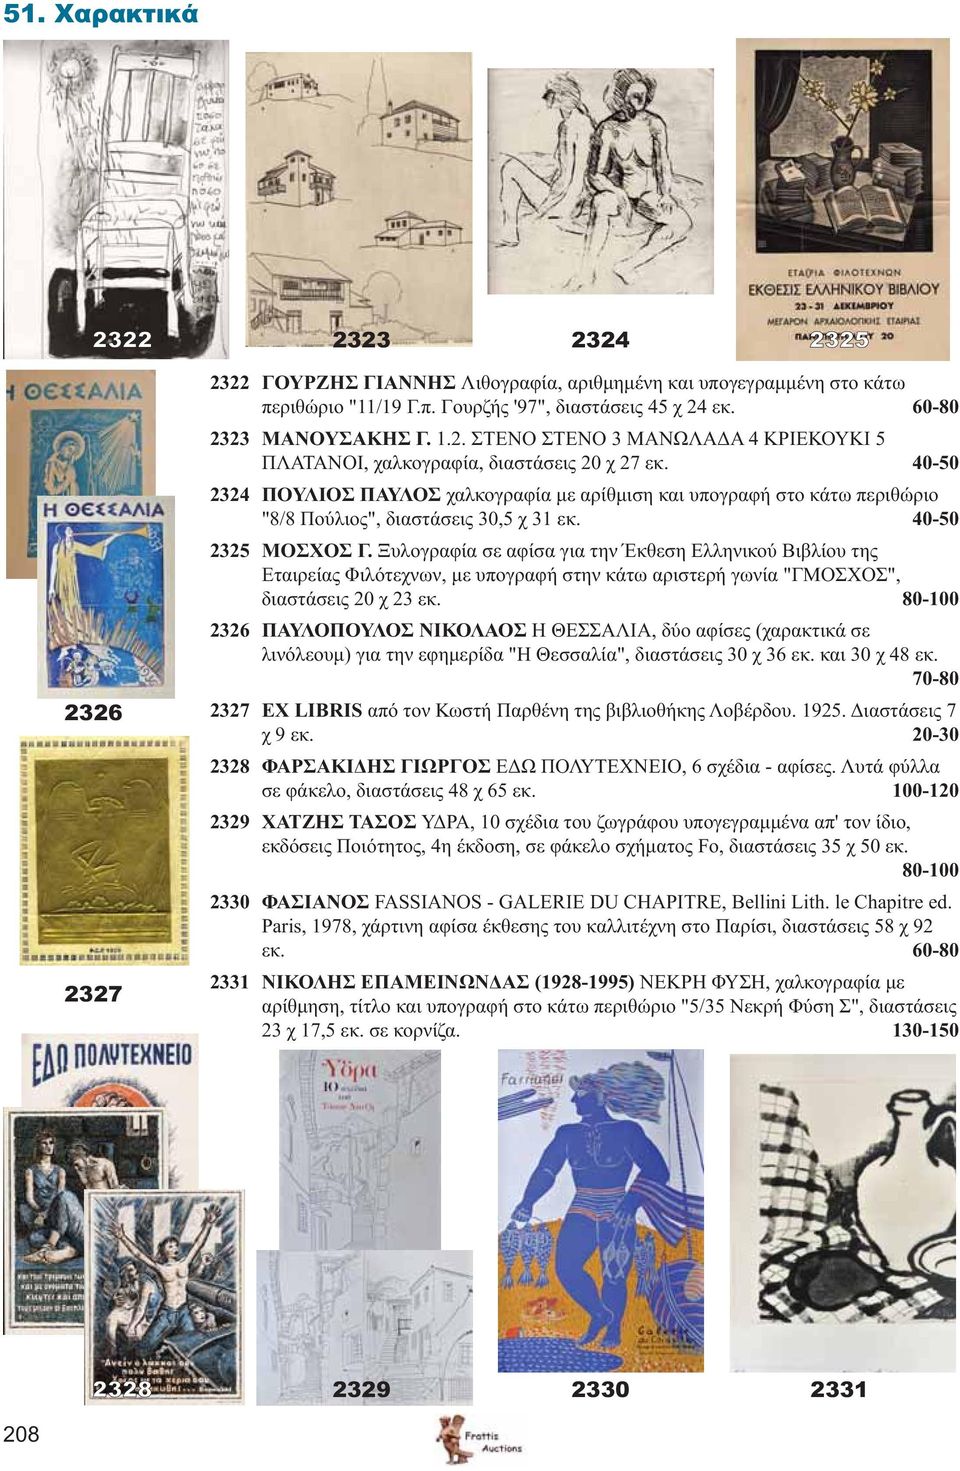 Ξυλογραφία σε αφίσα για την Έκθεση Ελληνικού Βιβλίου της Εταιρείας Φιλότεχνων, με υπογραφή στην κάτω αριστερή γωνία "ΓΜΟΣΧΟΣ", διαστάσεις 20 χ 23 εκ.